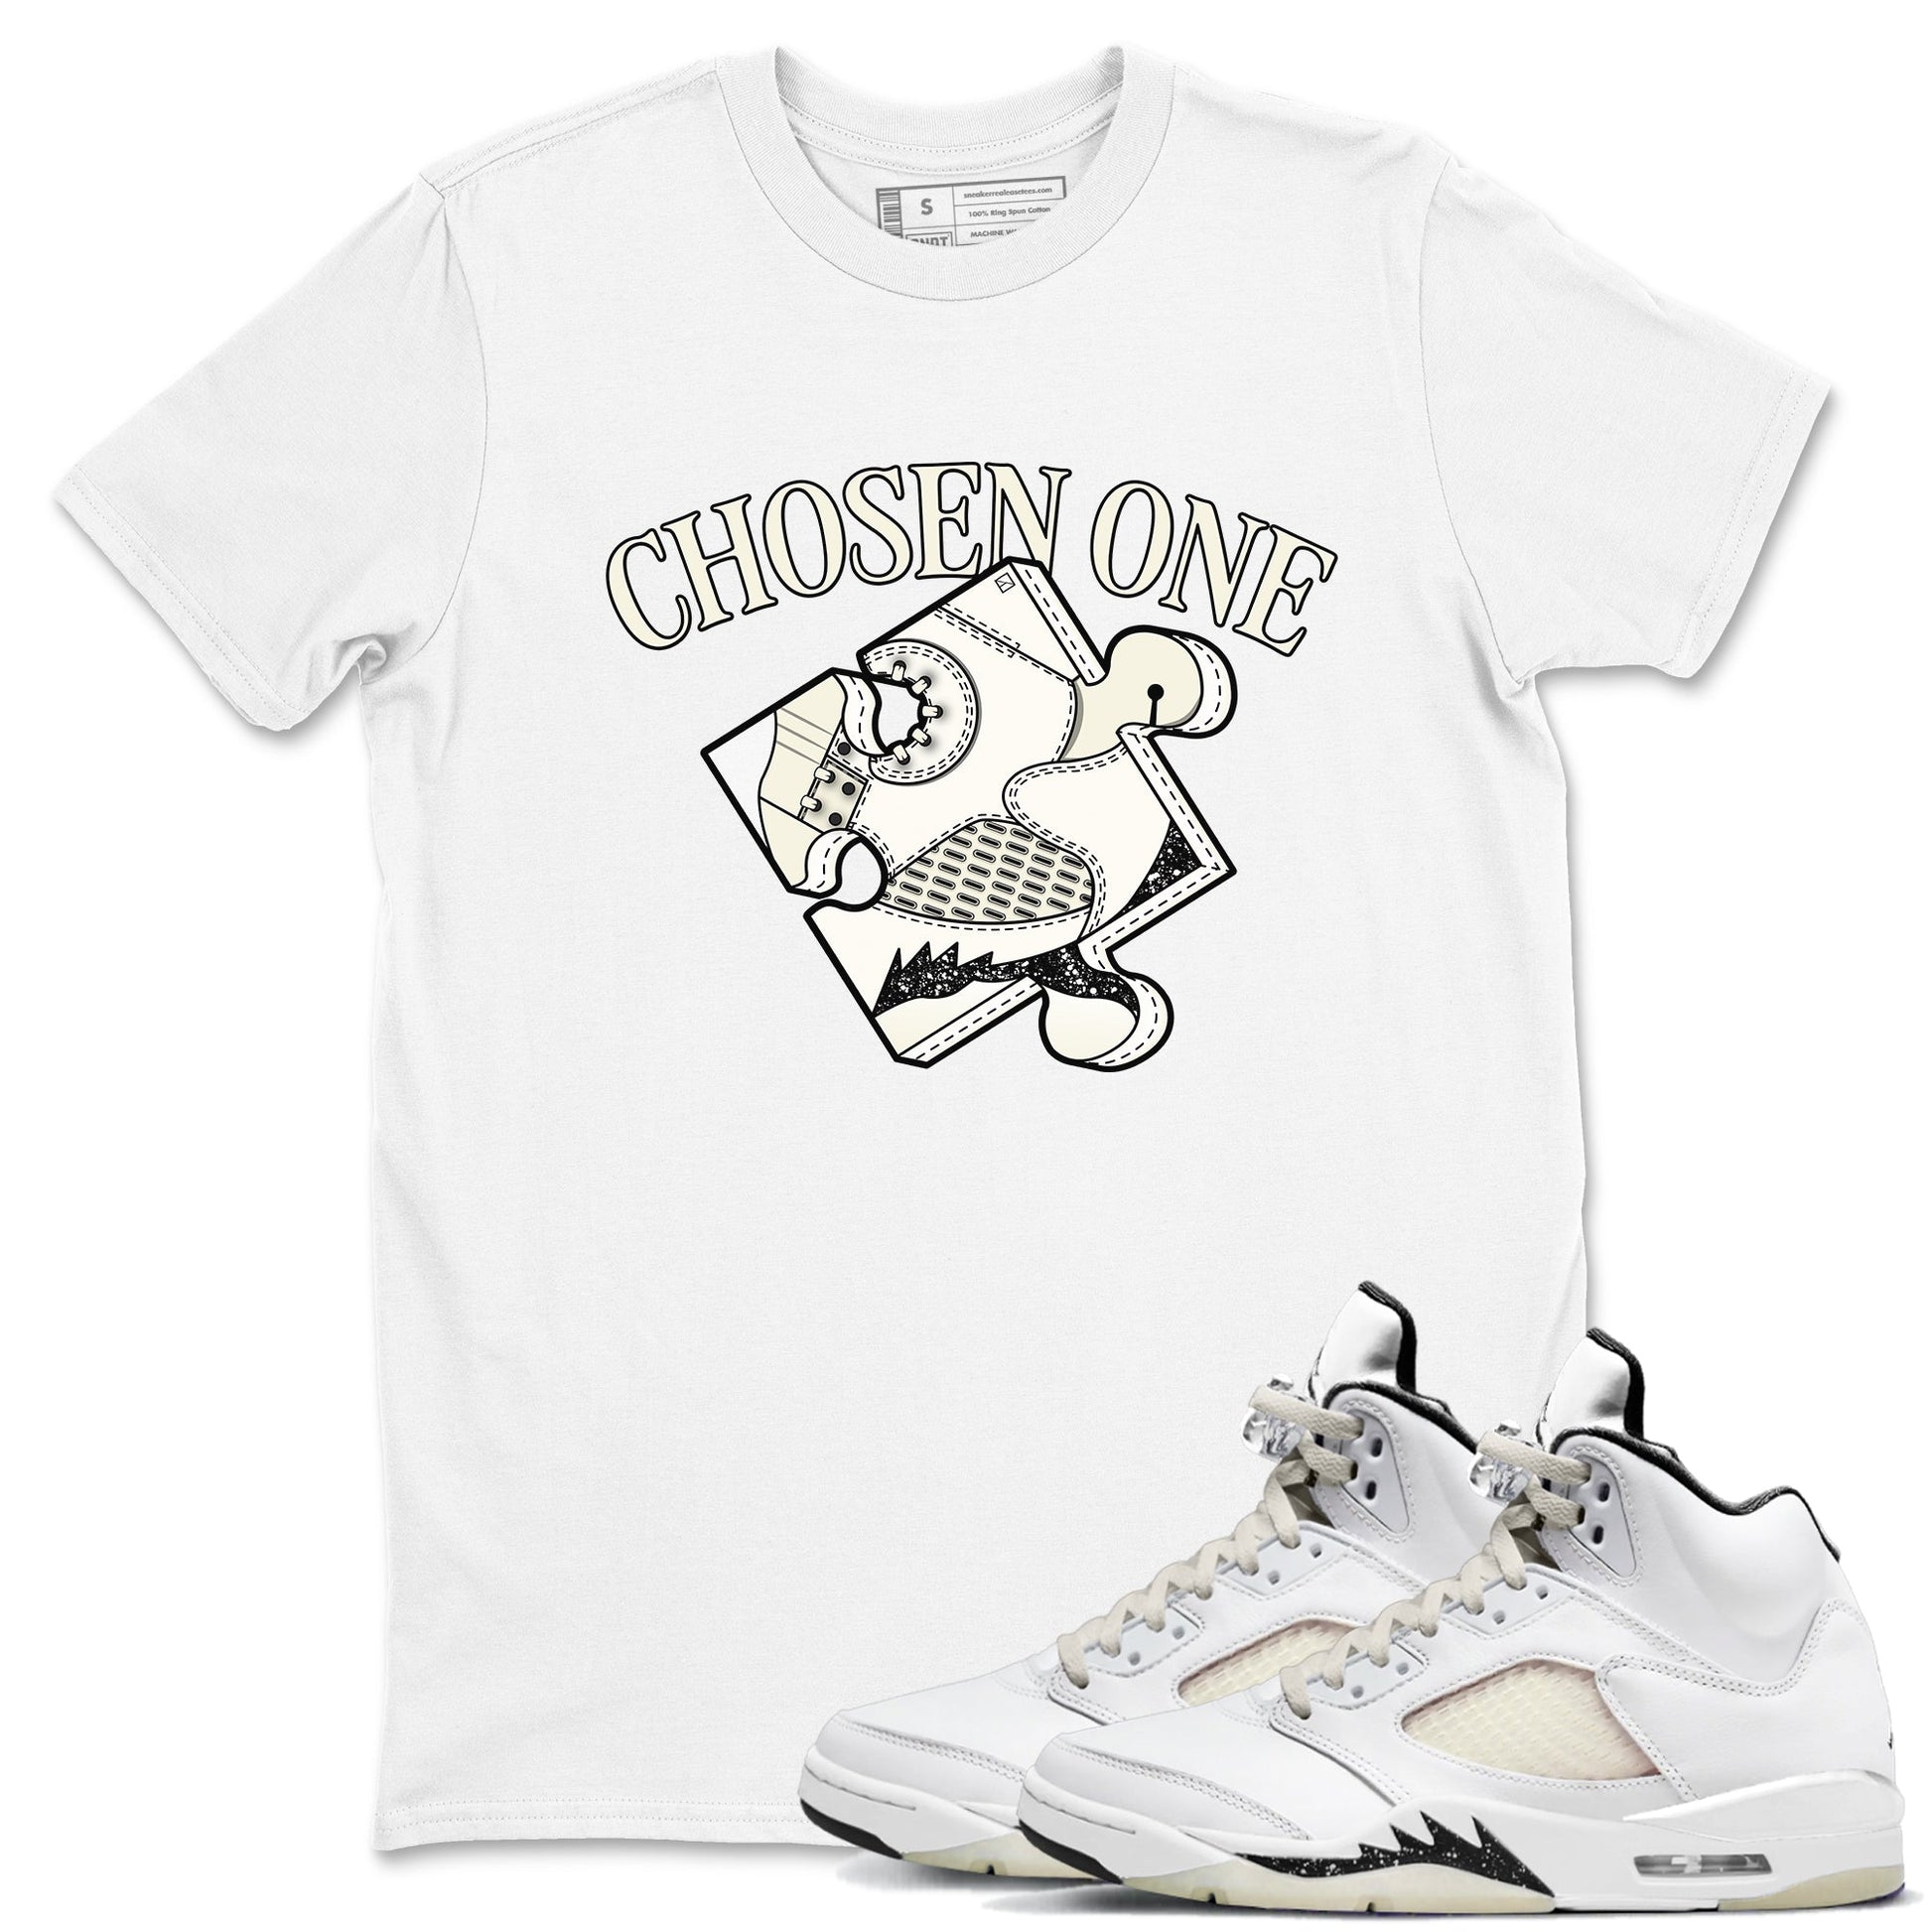 5s Sail shirt to match jordans Sneaker Puzzle sneaker tees Air Jordan 5 Sail SNRT Sneaker Release Tees unisex cotton White 1 crew neck shirt